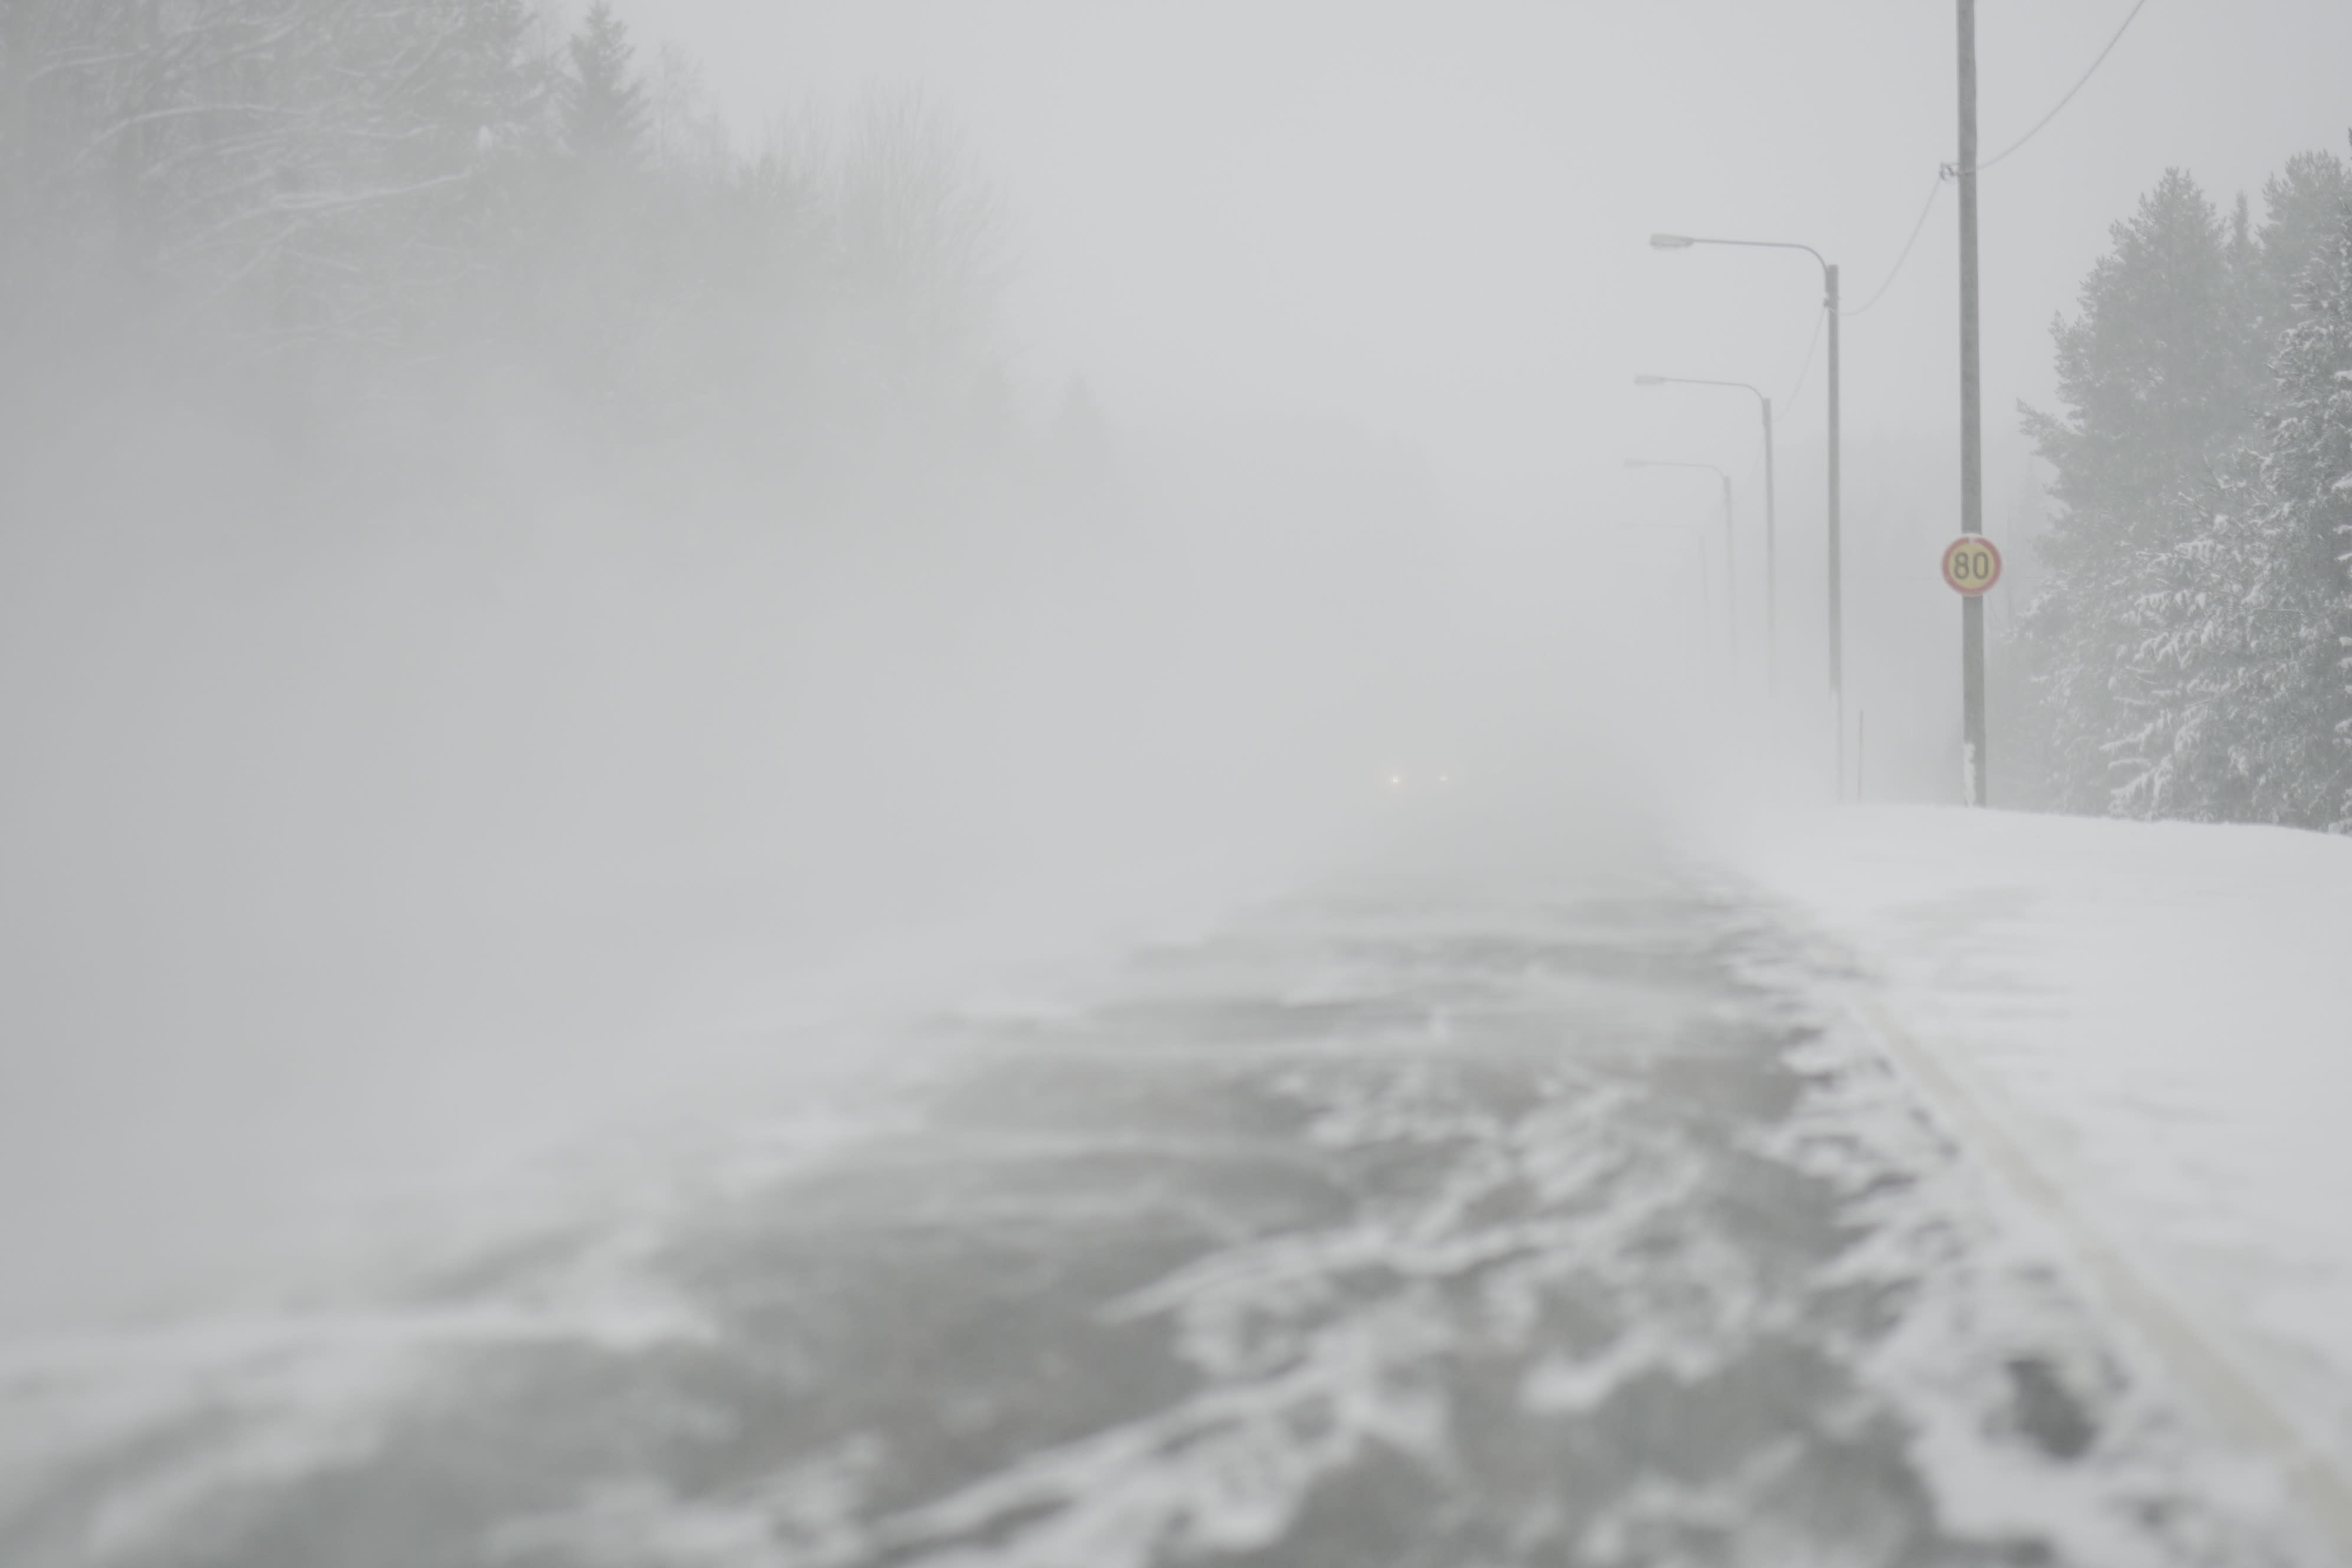 Autofahrer warnten vor schlechten Fahrbedingungen, als Schneestürme vorhergesagt wurden